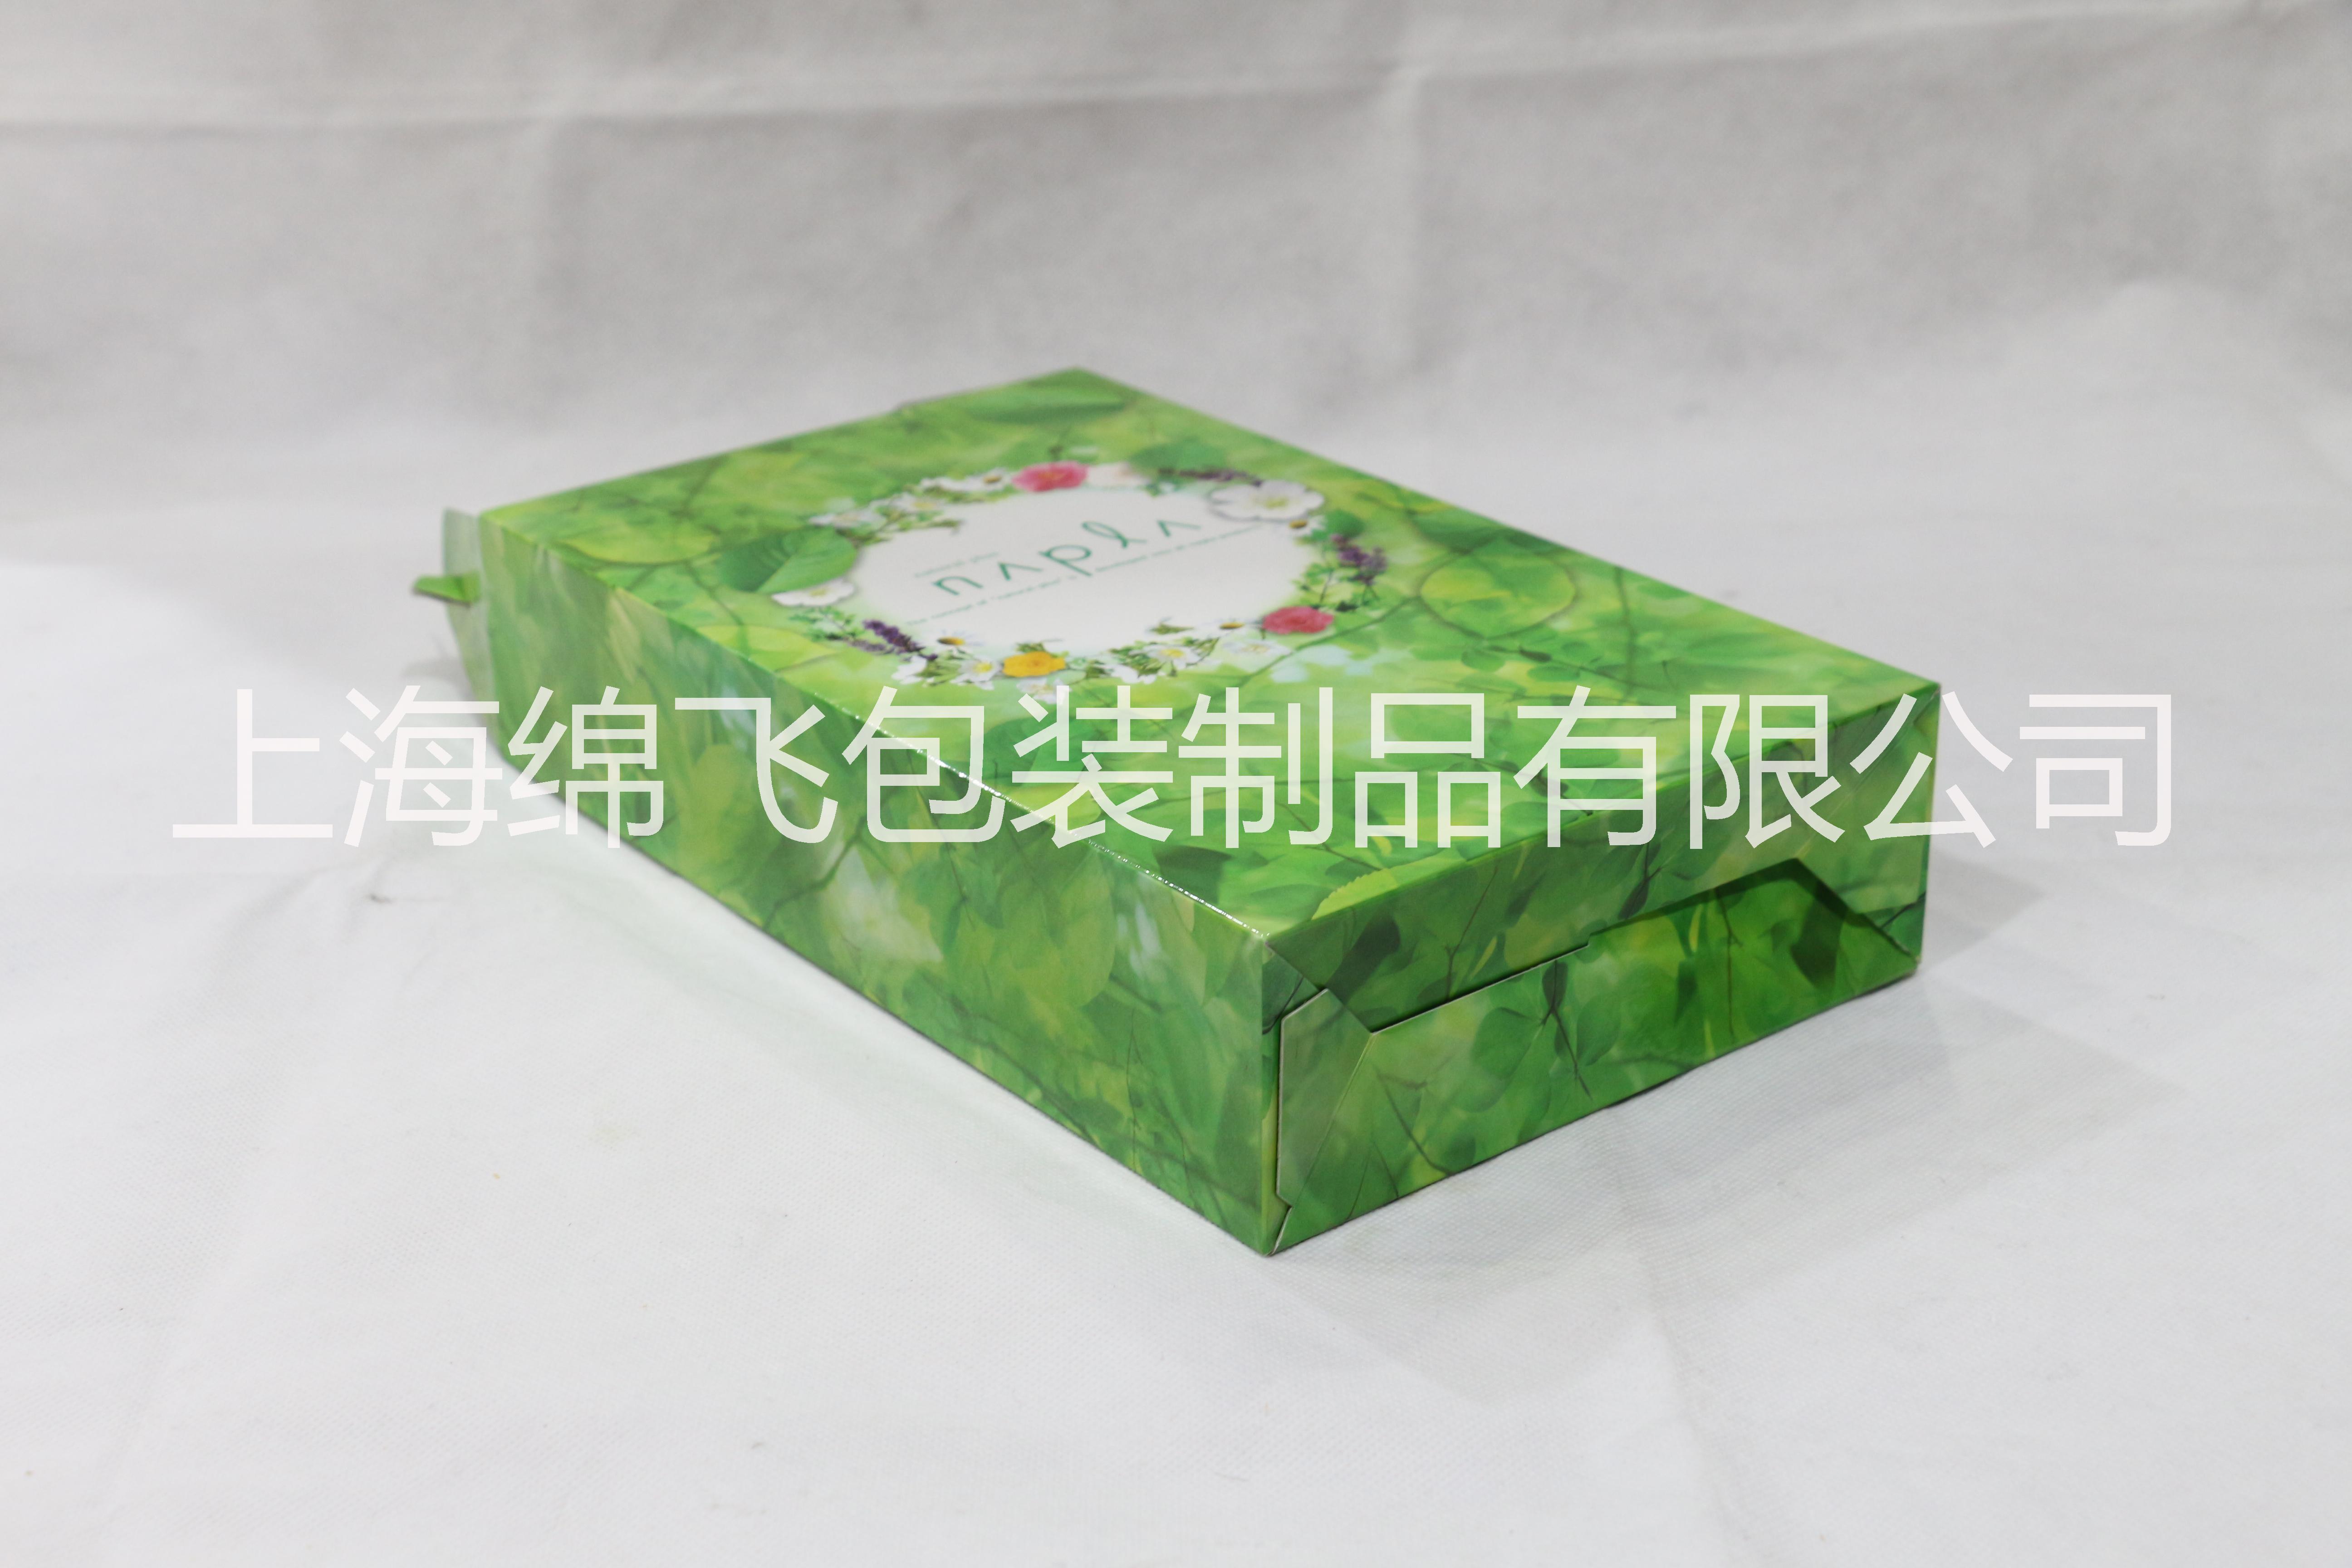 订制食品包装 礼盒包装 服装礼盒 灯泡盒 酒盒 蛋糕盒 牛排盒  上海包装定制